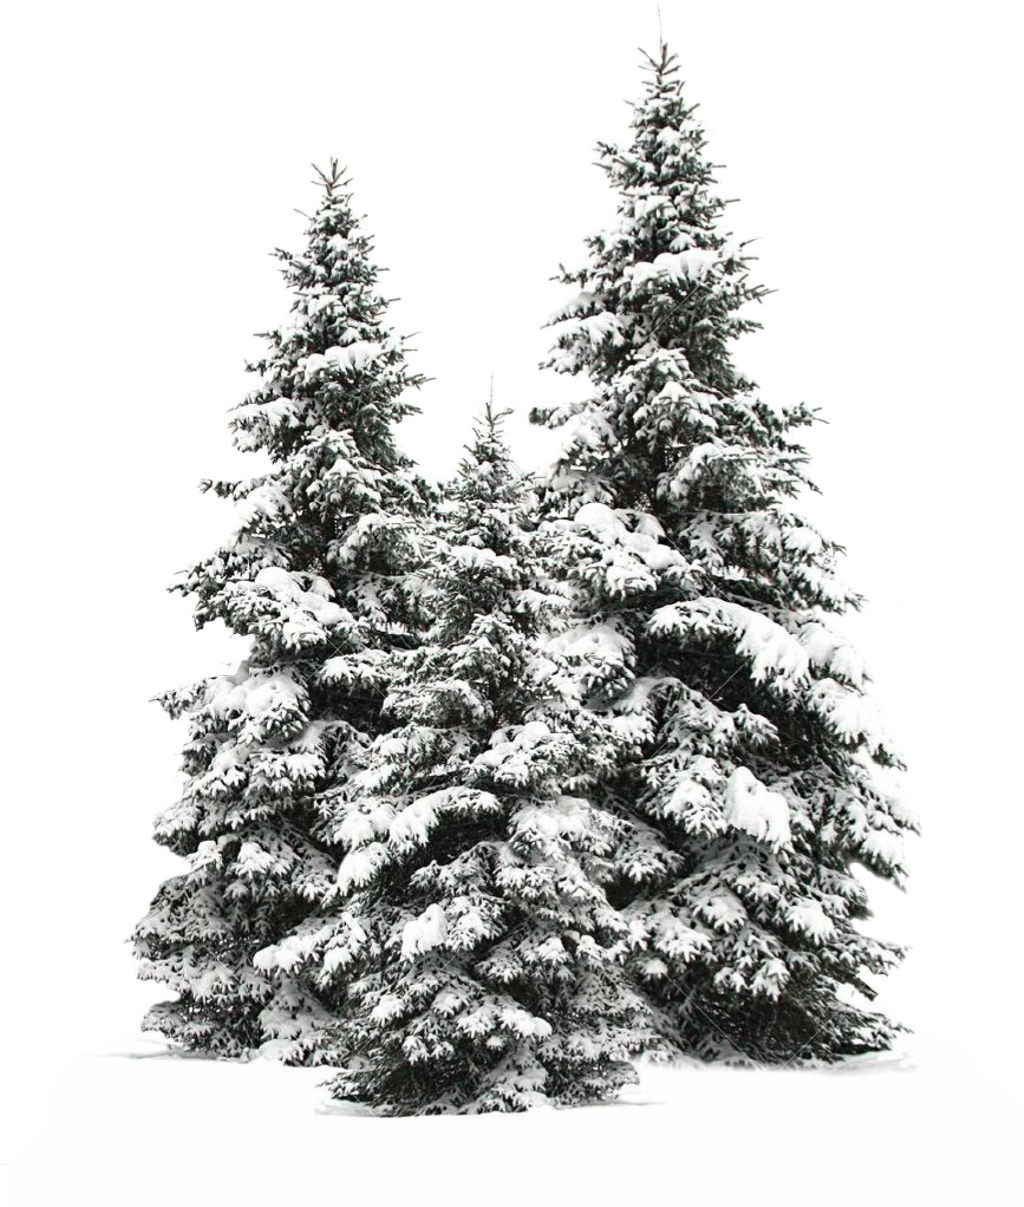 Tree Trees Christmas Christmastree Snow Winter Wintertr Snowy Pine